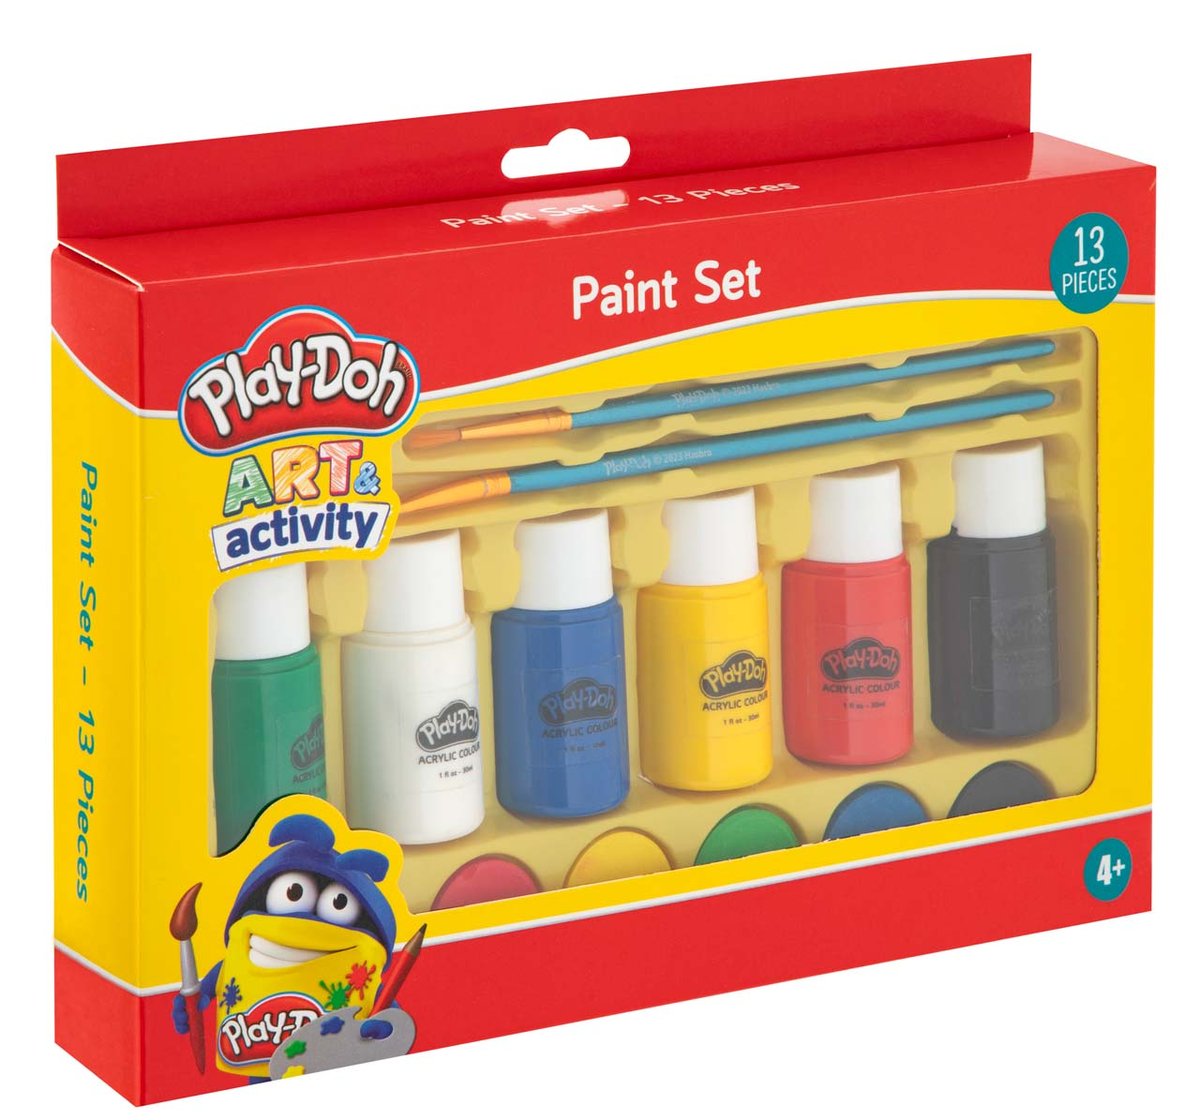 Zdjęcia - Rysowanie Zestaw farb, 13 szt. Play-Doh: 6 x 30 ml farby akrylowej